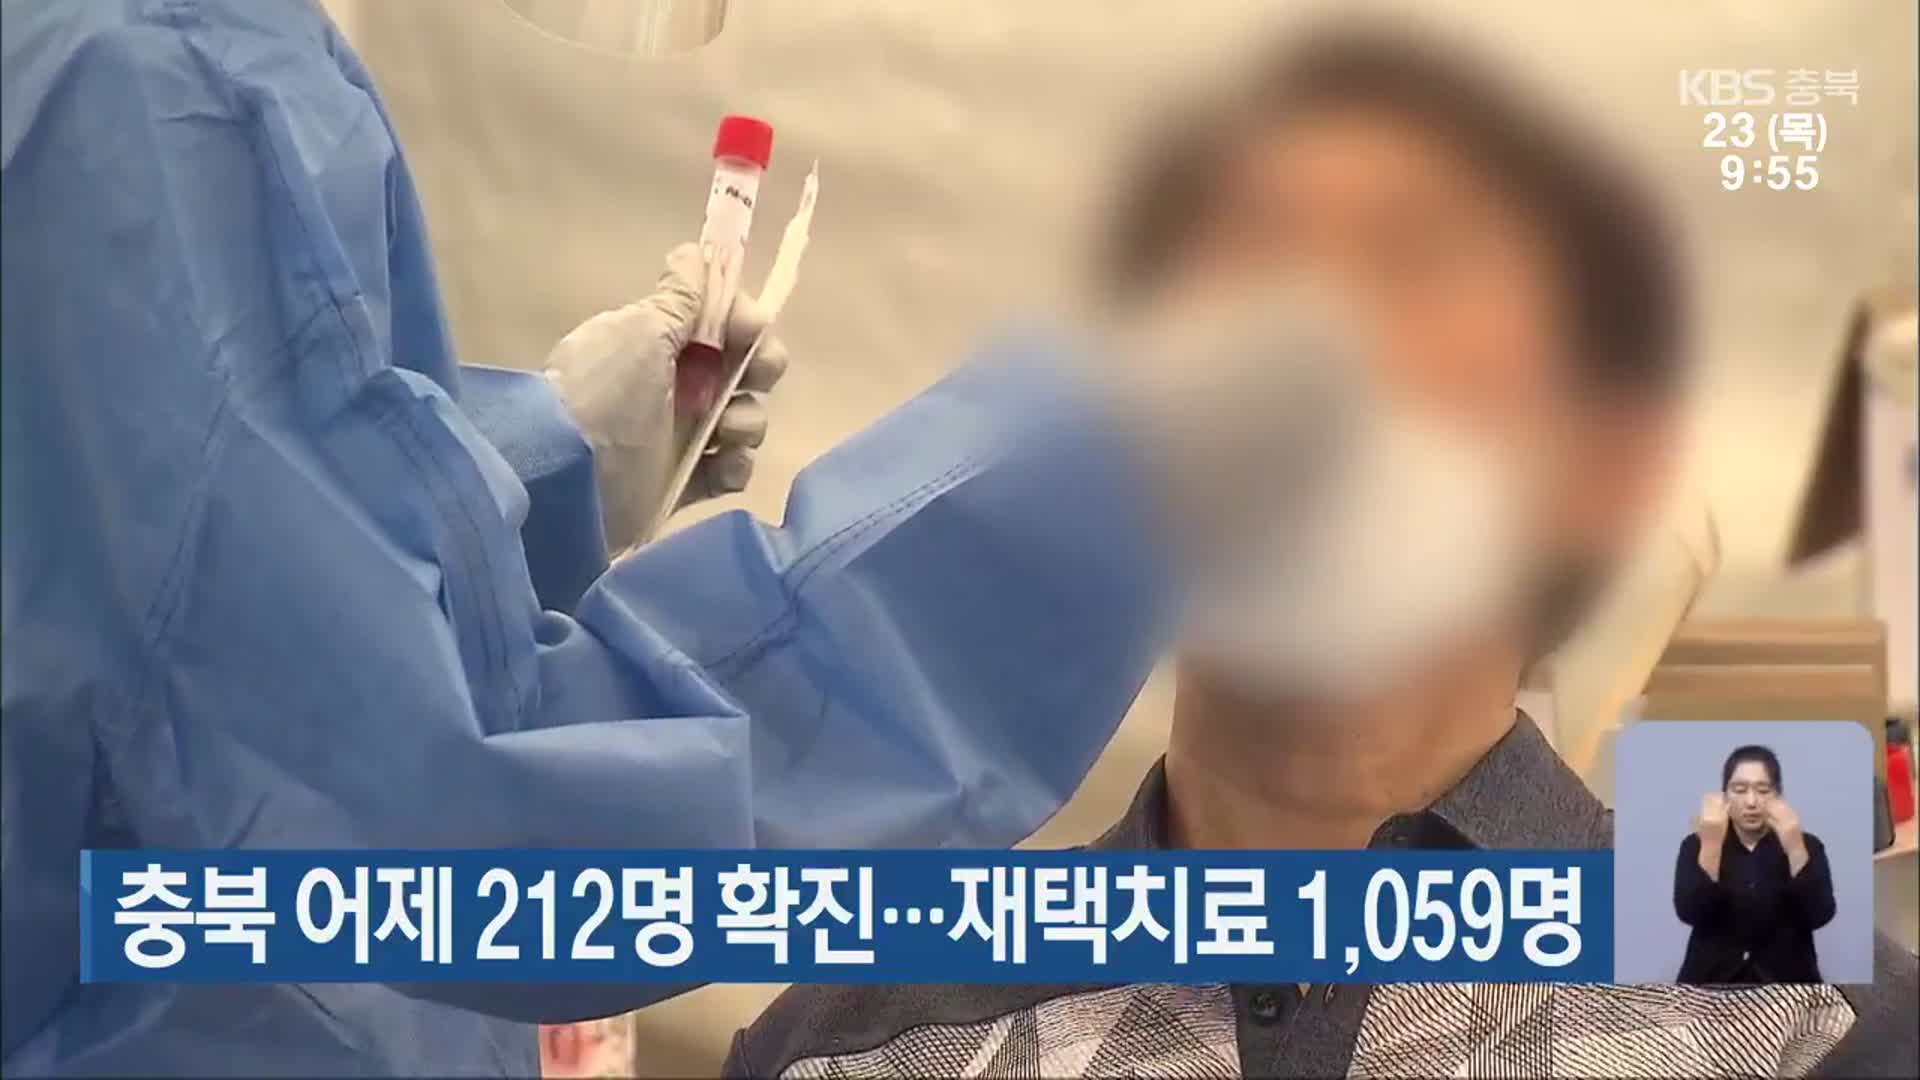 충북 어제 212명 확진…재택치료 1,059명